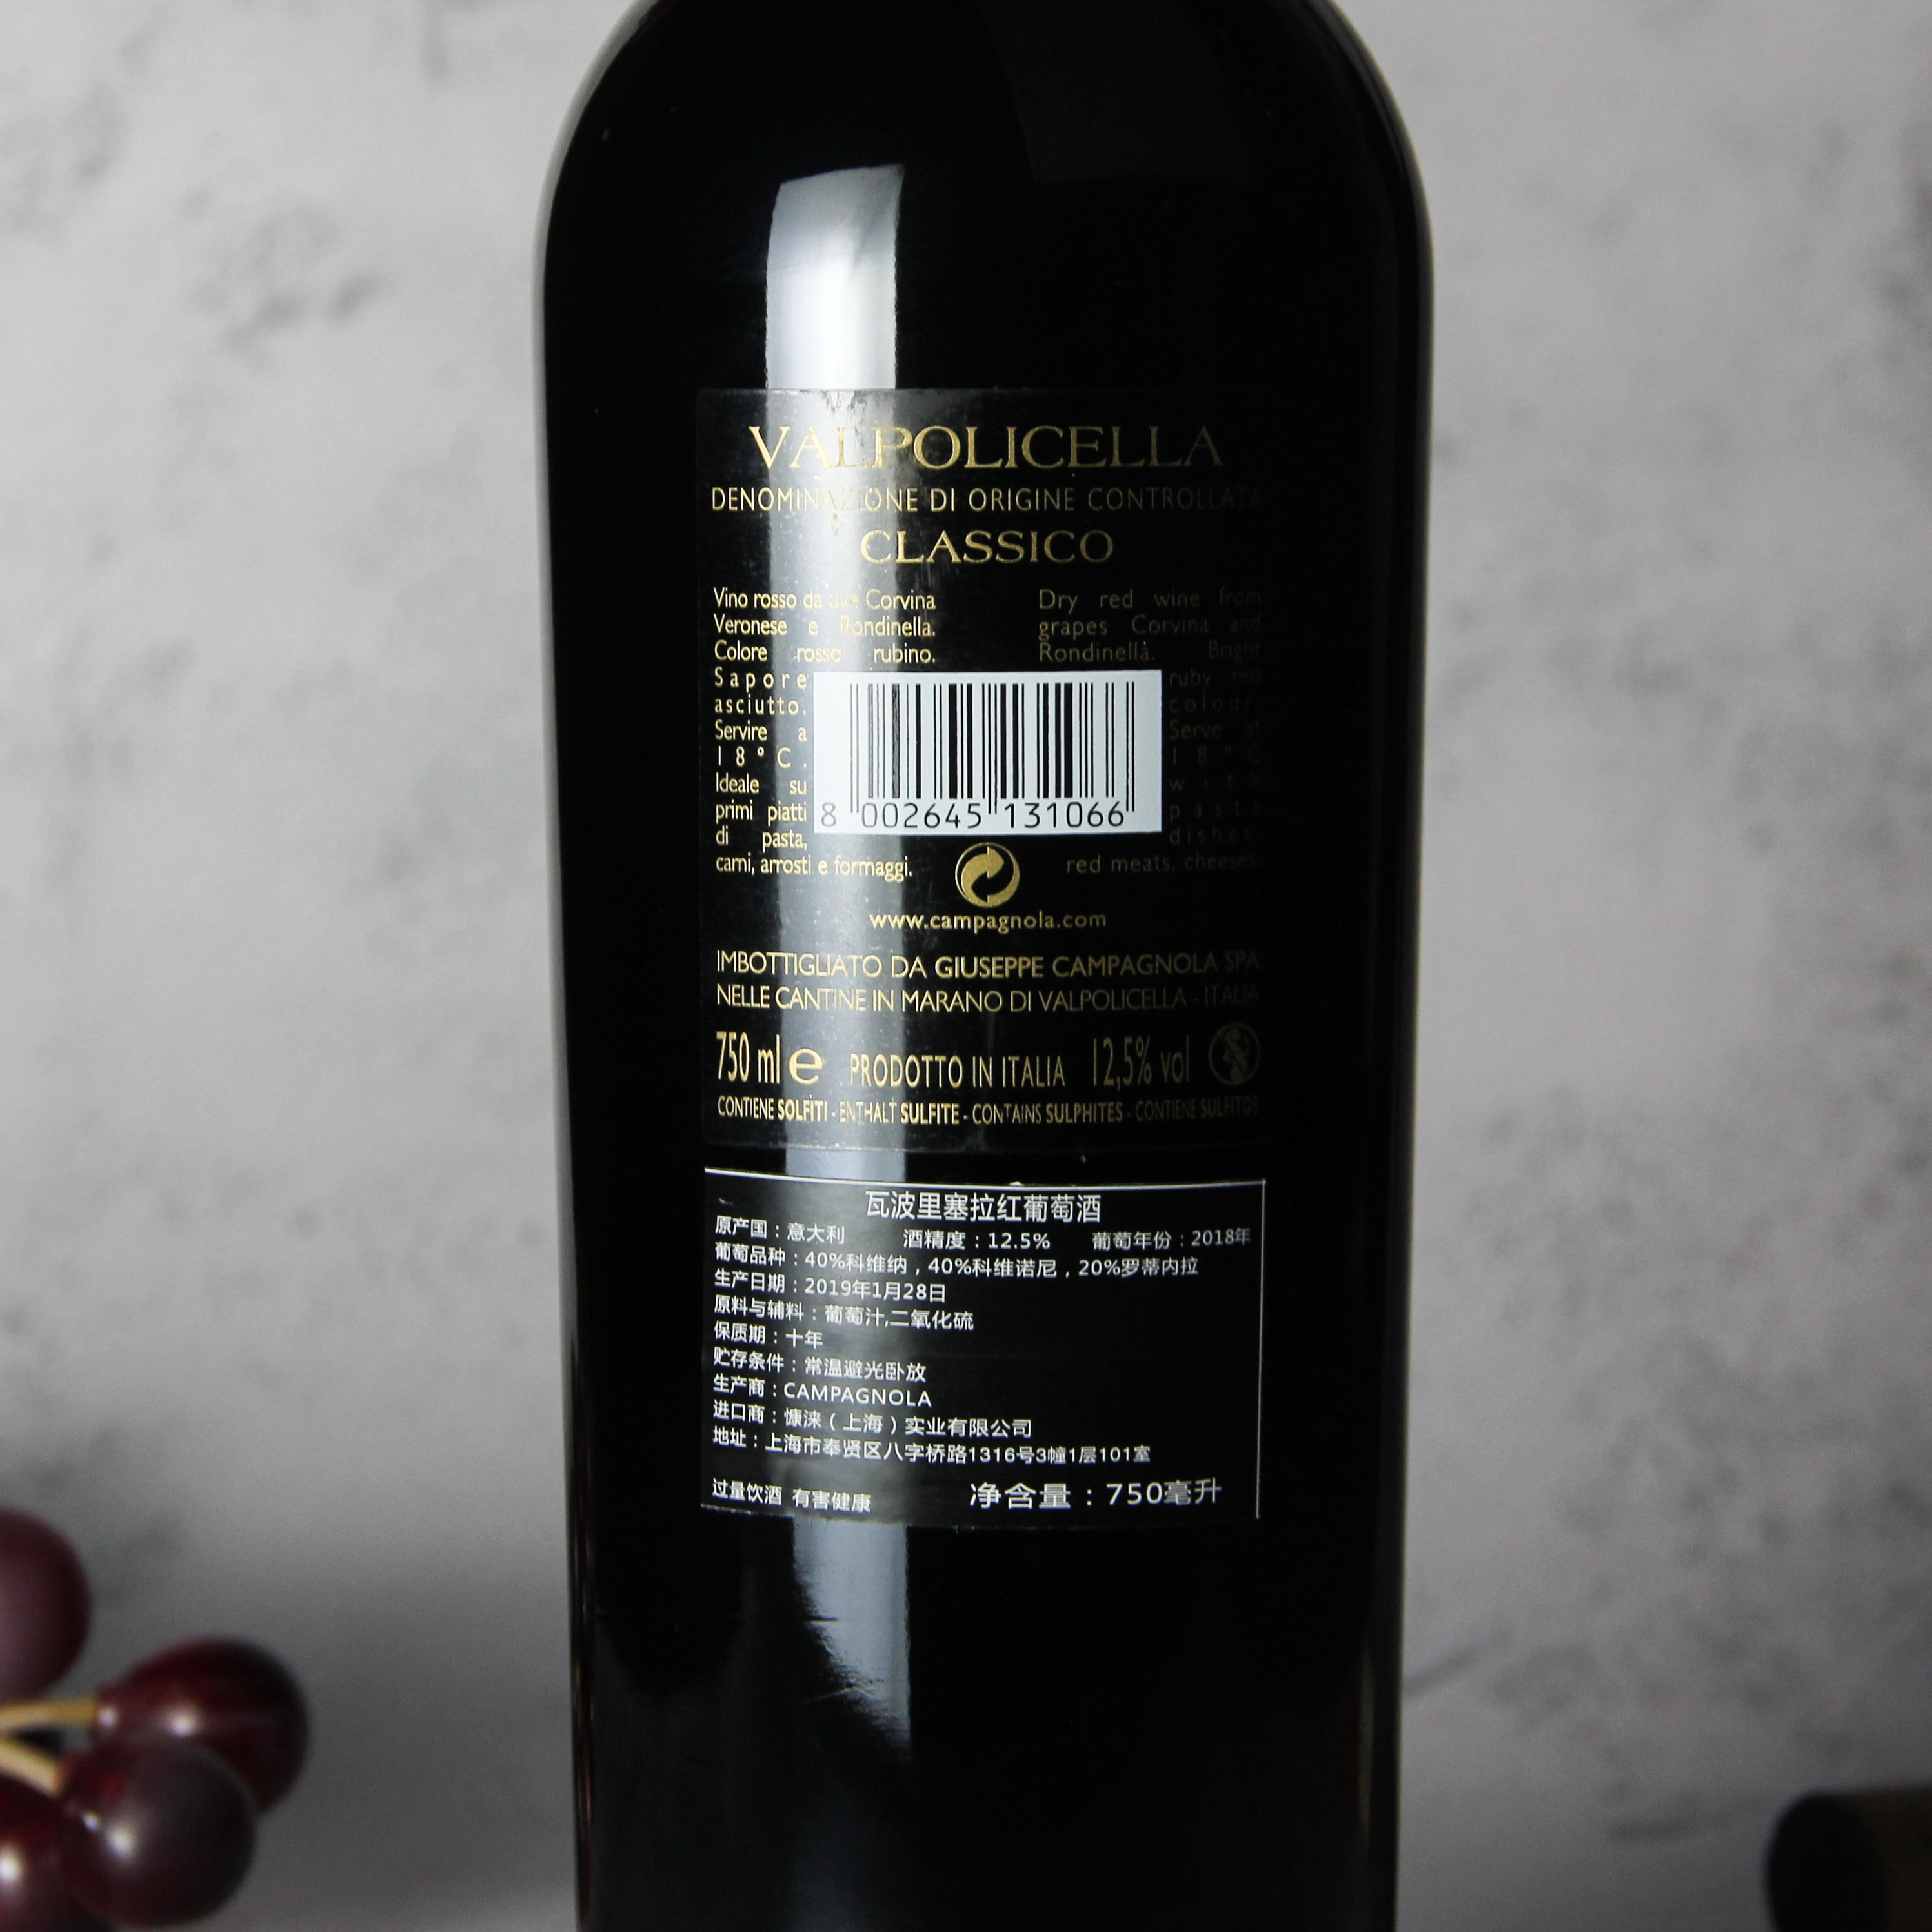 意大利威尼托坎帕诺拉酒庄经典瓦波里切拉红葡萄酒红酒